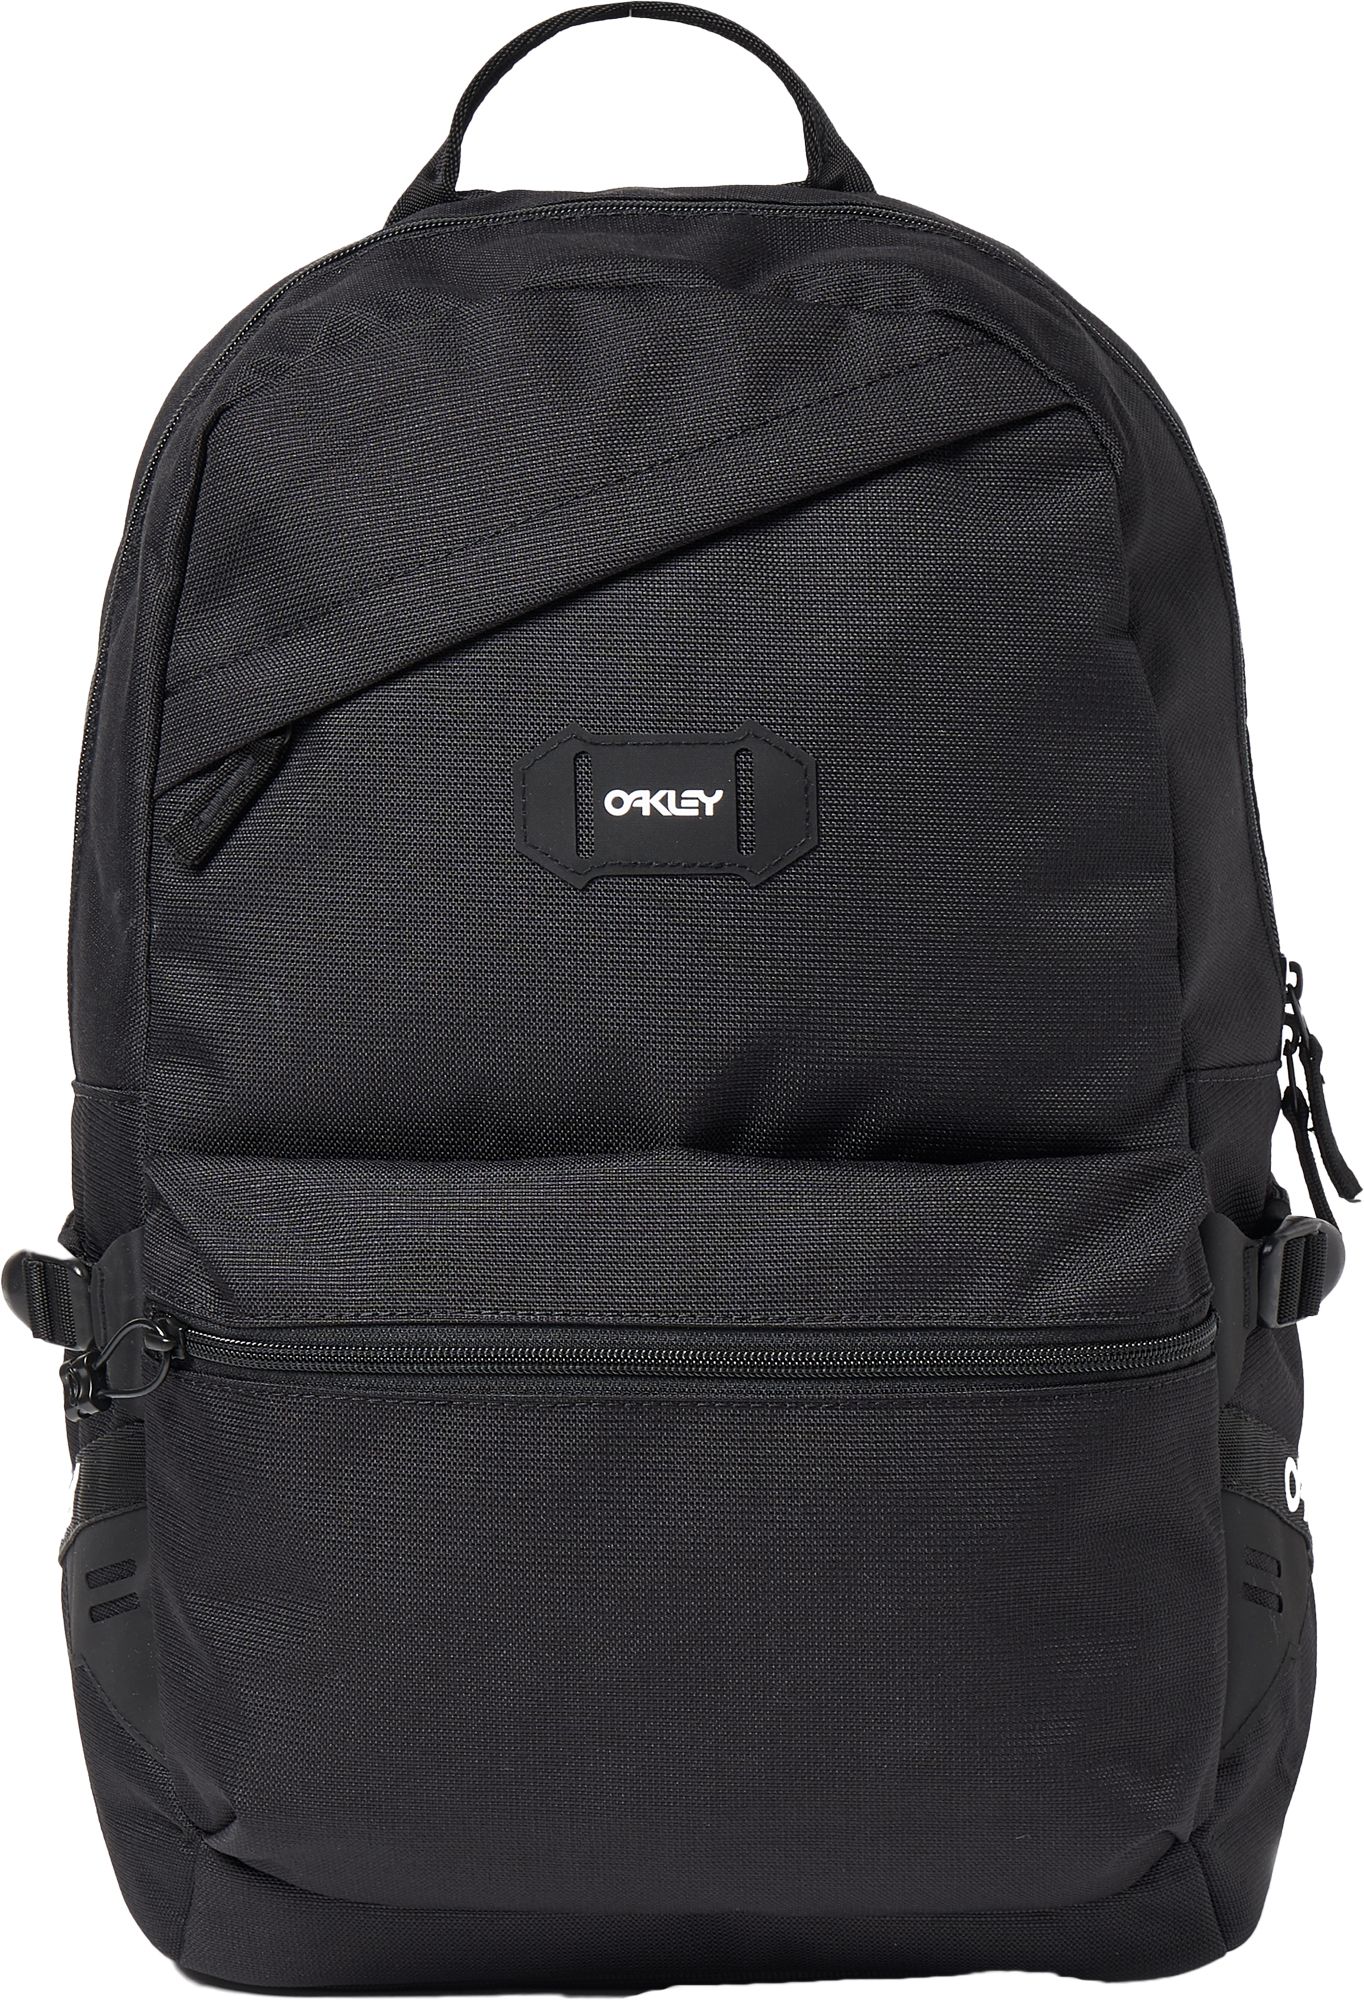 oakley street backpack